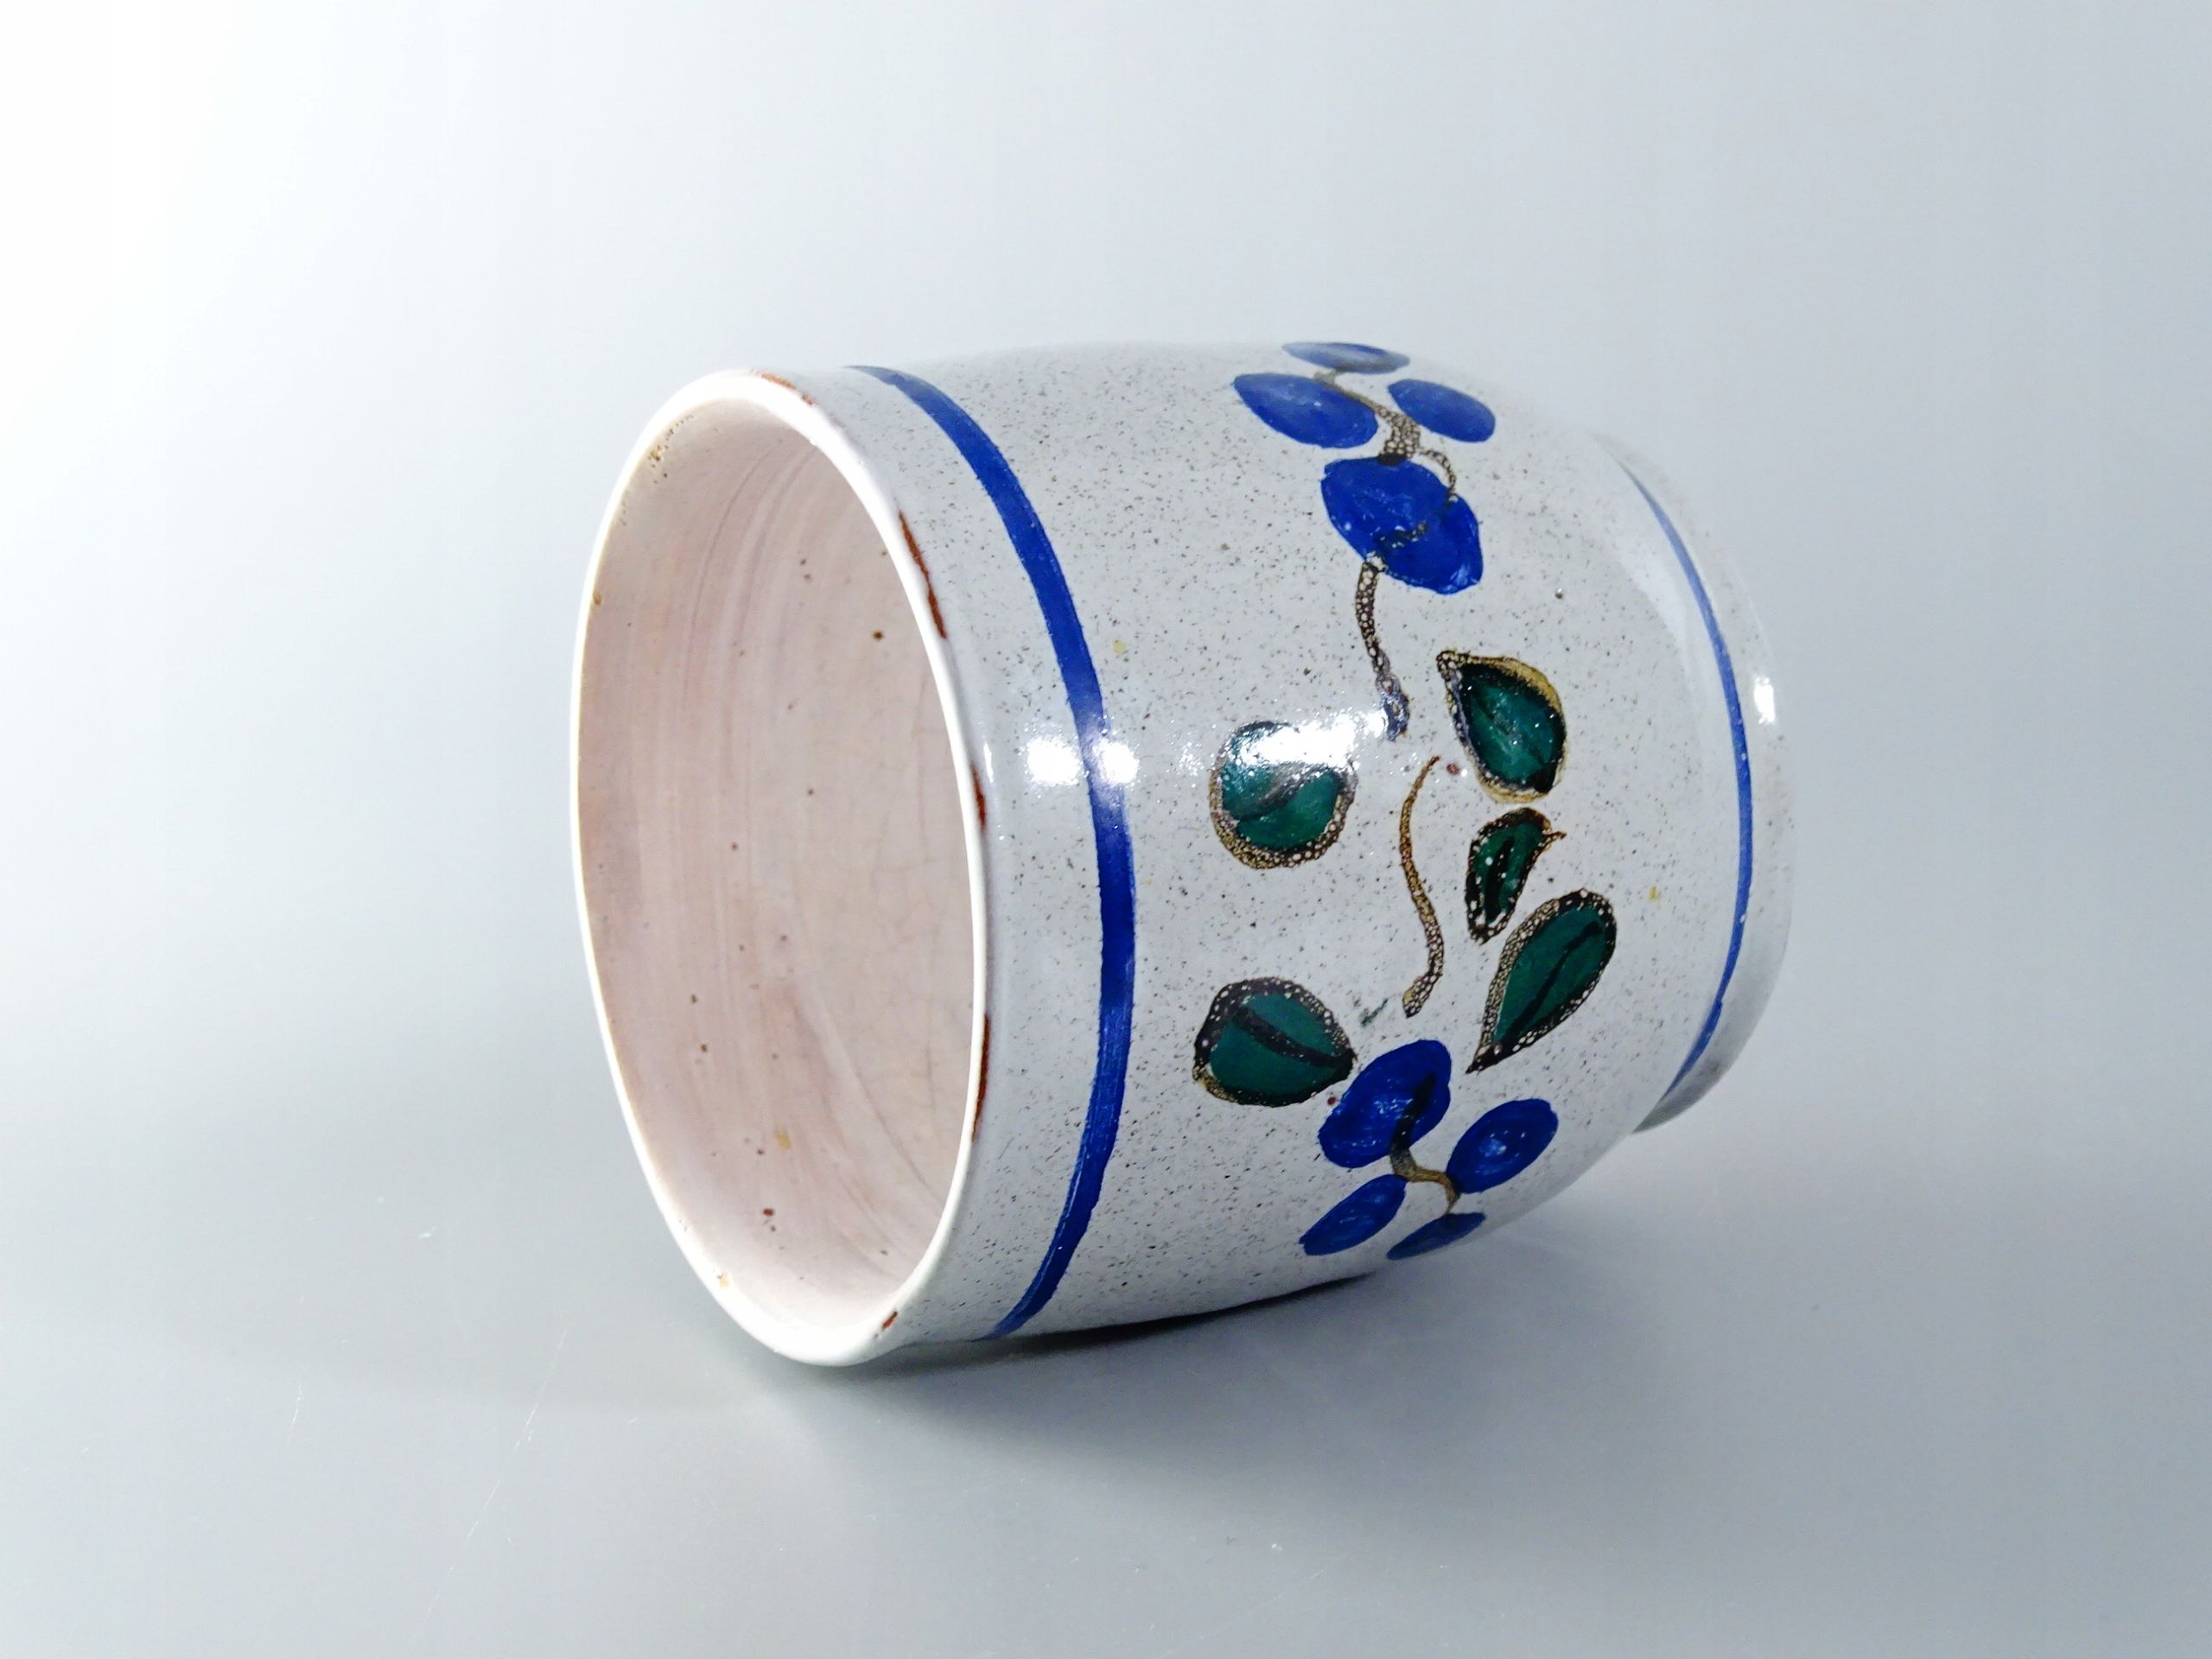 ceramiczny kubek pojemnik koło garncarskie